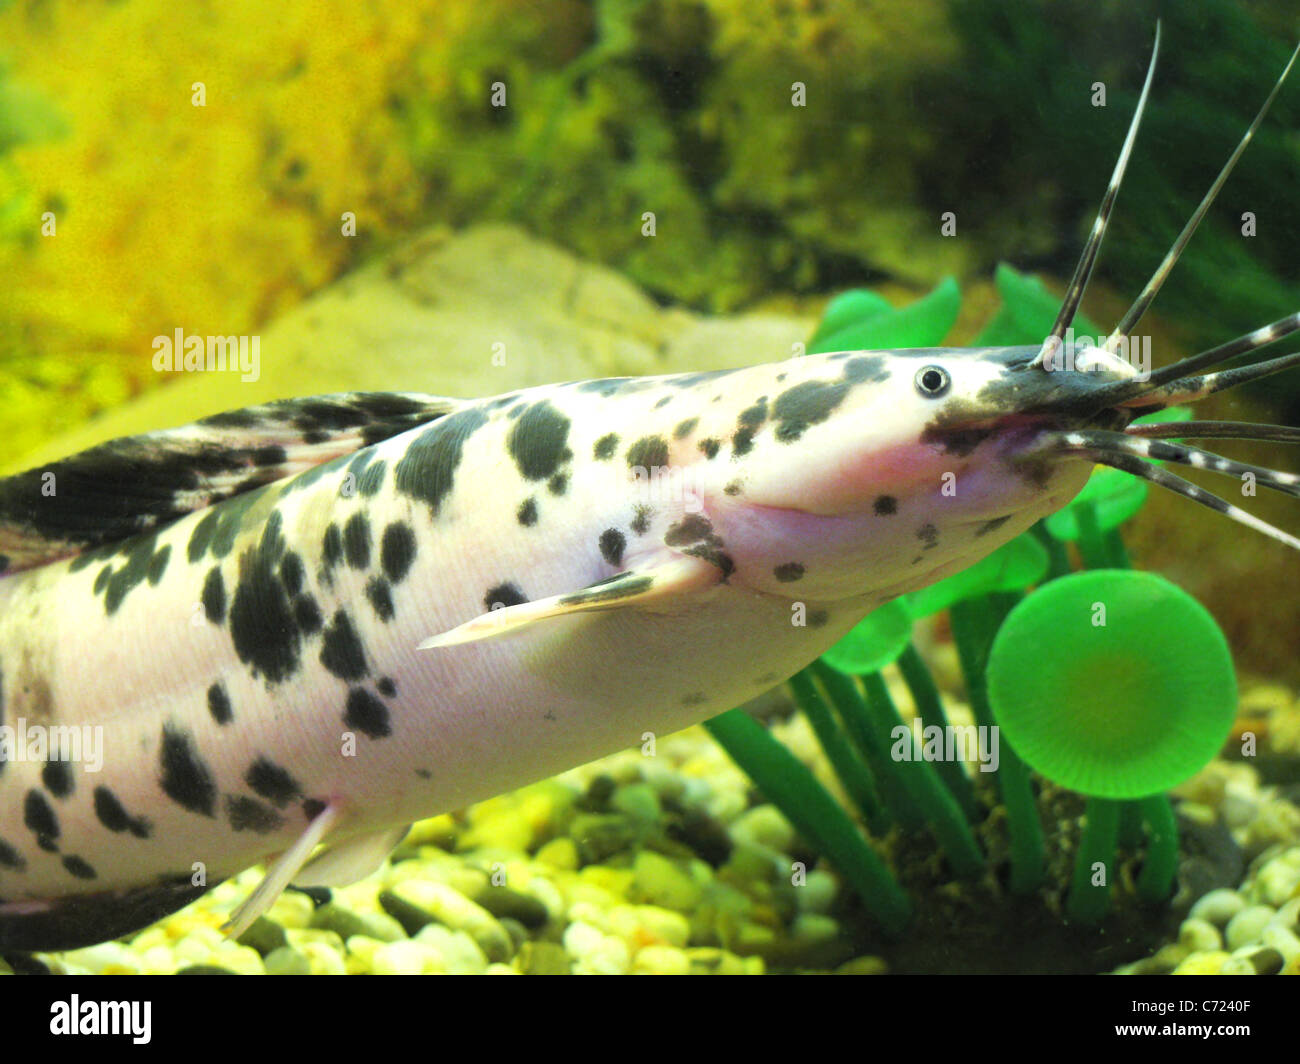 fish in aquarium Stock Photo